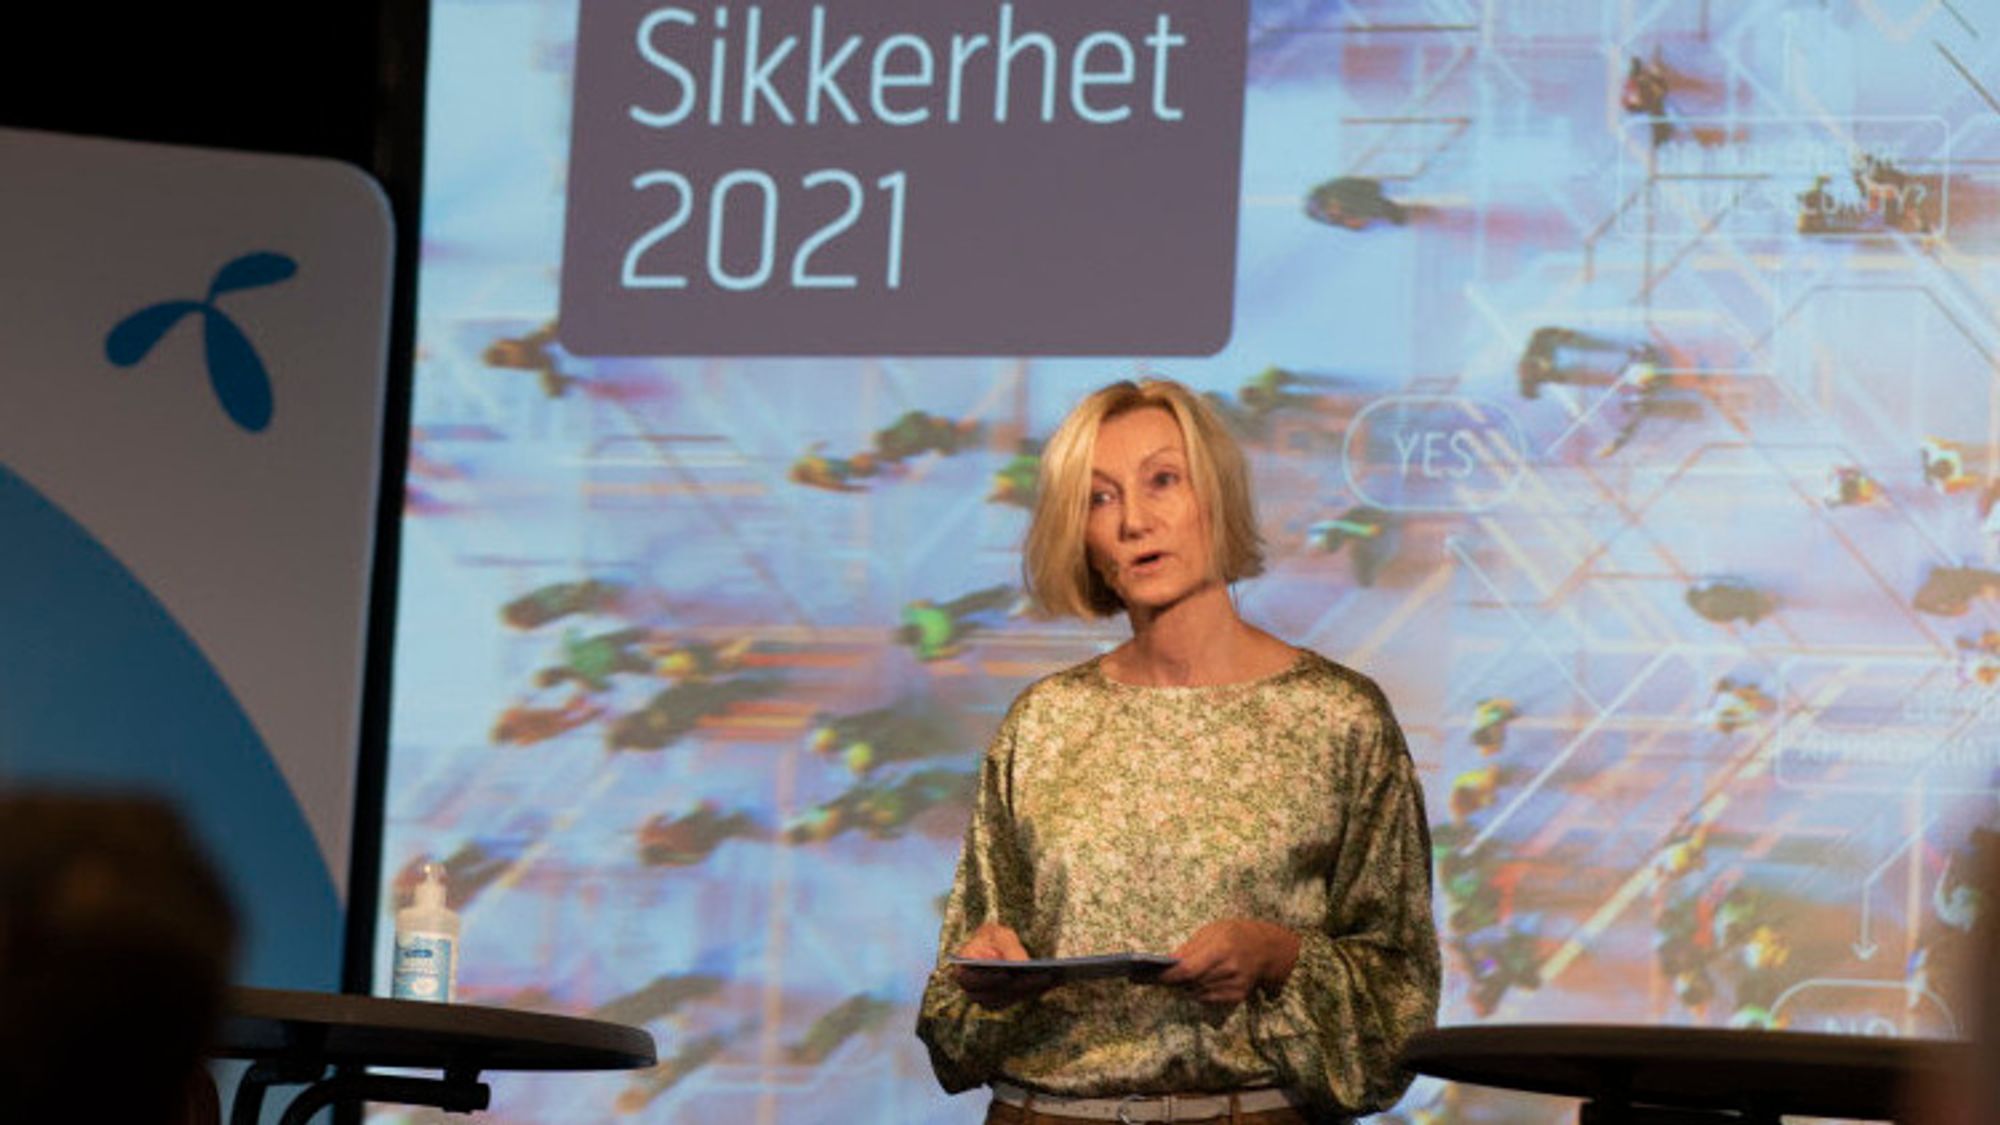 Telenors sikkerhetsdirektør Hanne Tangen Nilsen mener Telenors posisjon i totalforsvaret bør formaliseres.